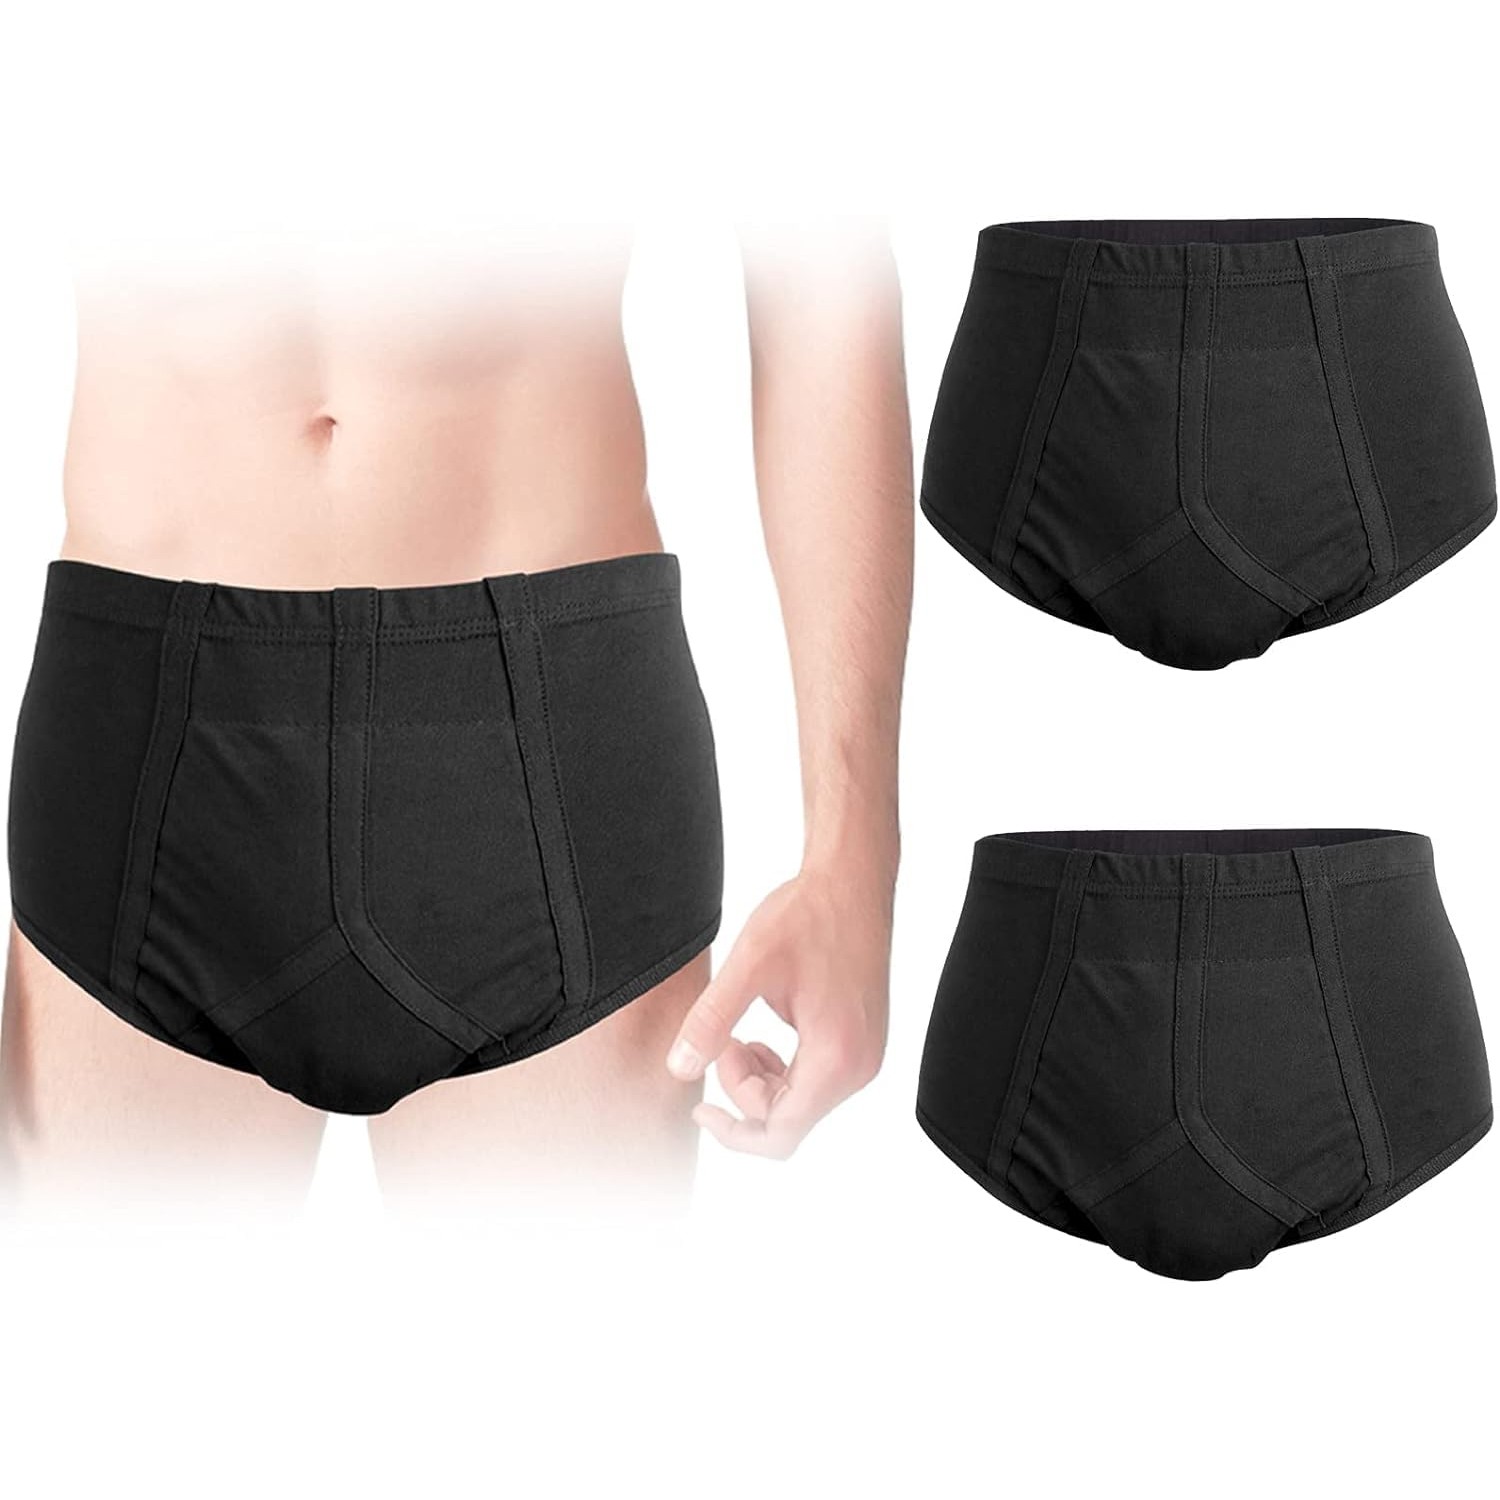 Incontinence Underwear for Men 2-Pack Men’s Incontinence Underwear ...